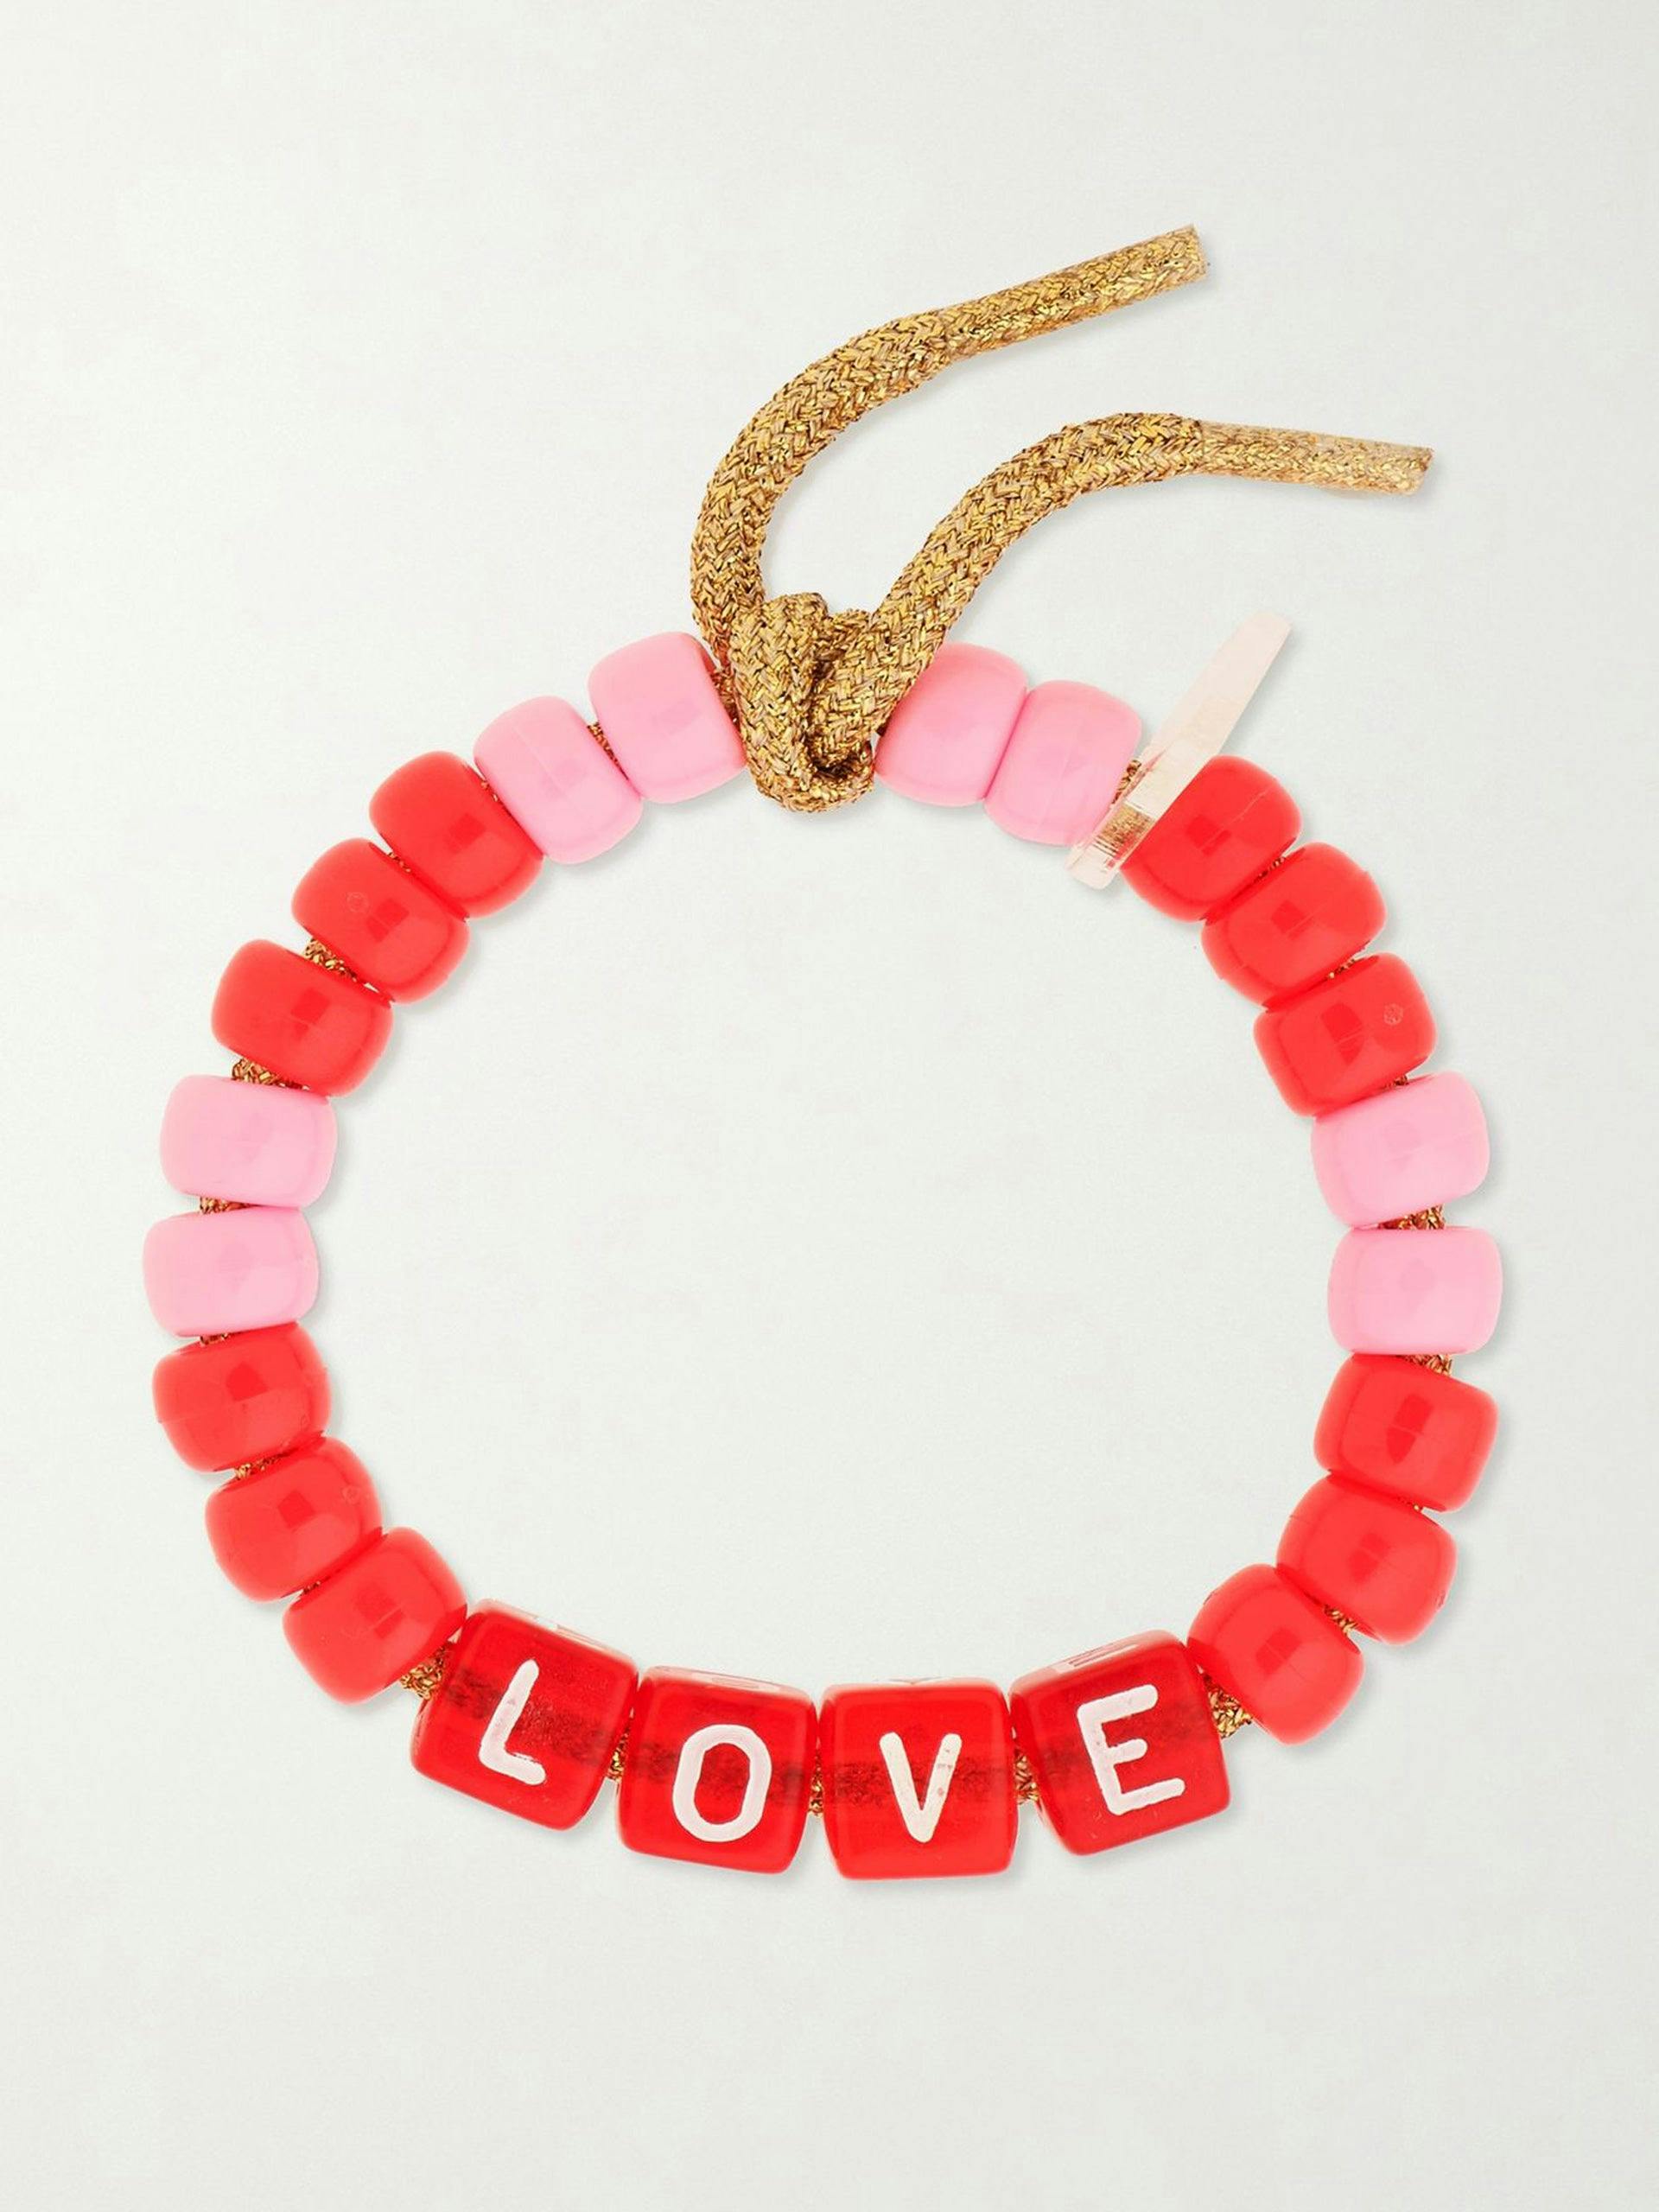 Love' beaded bracelet